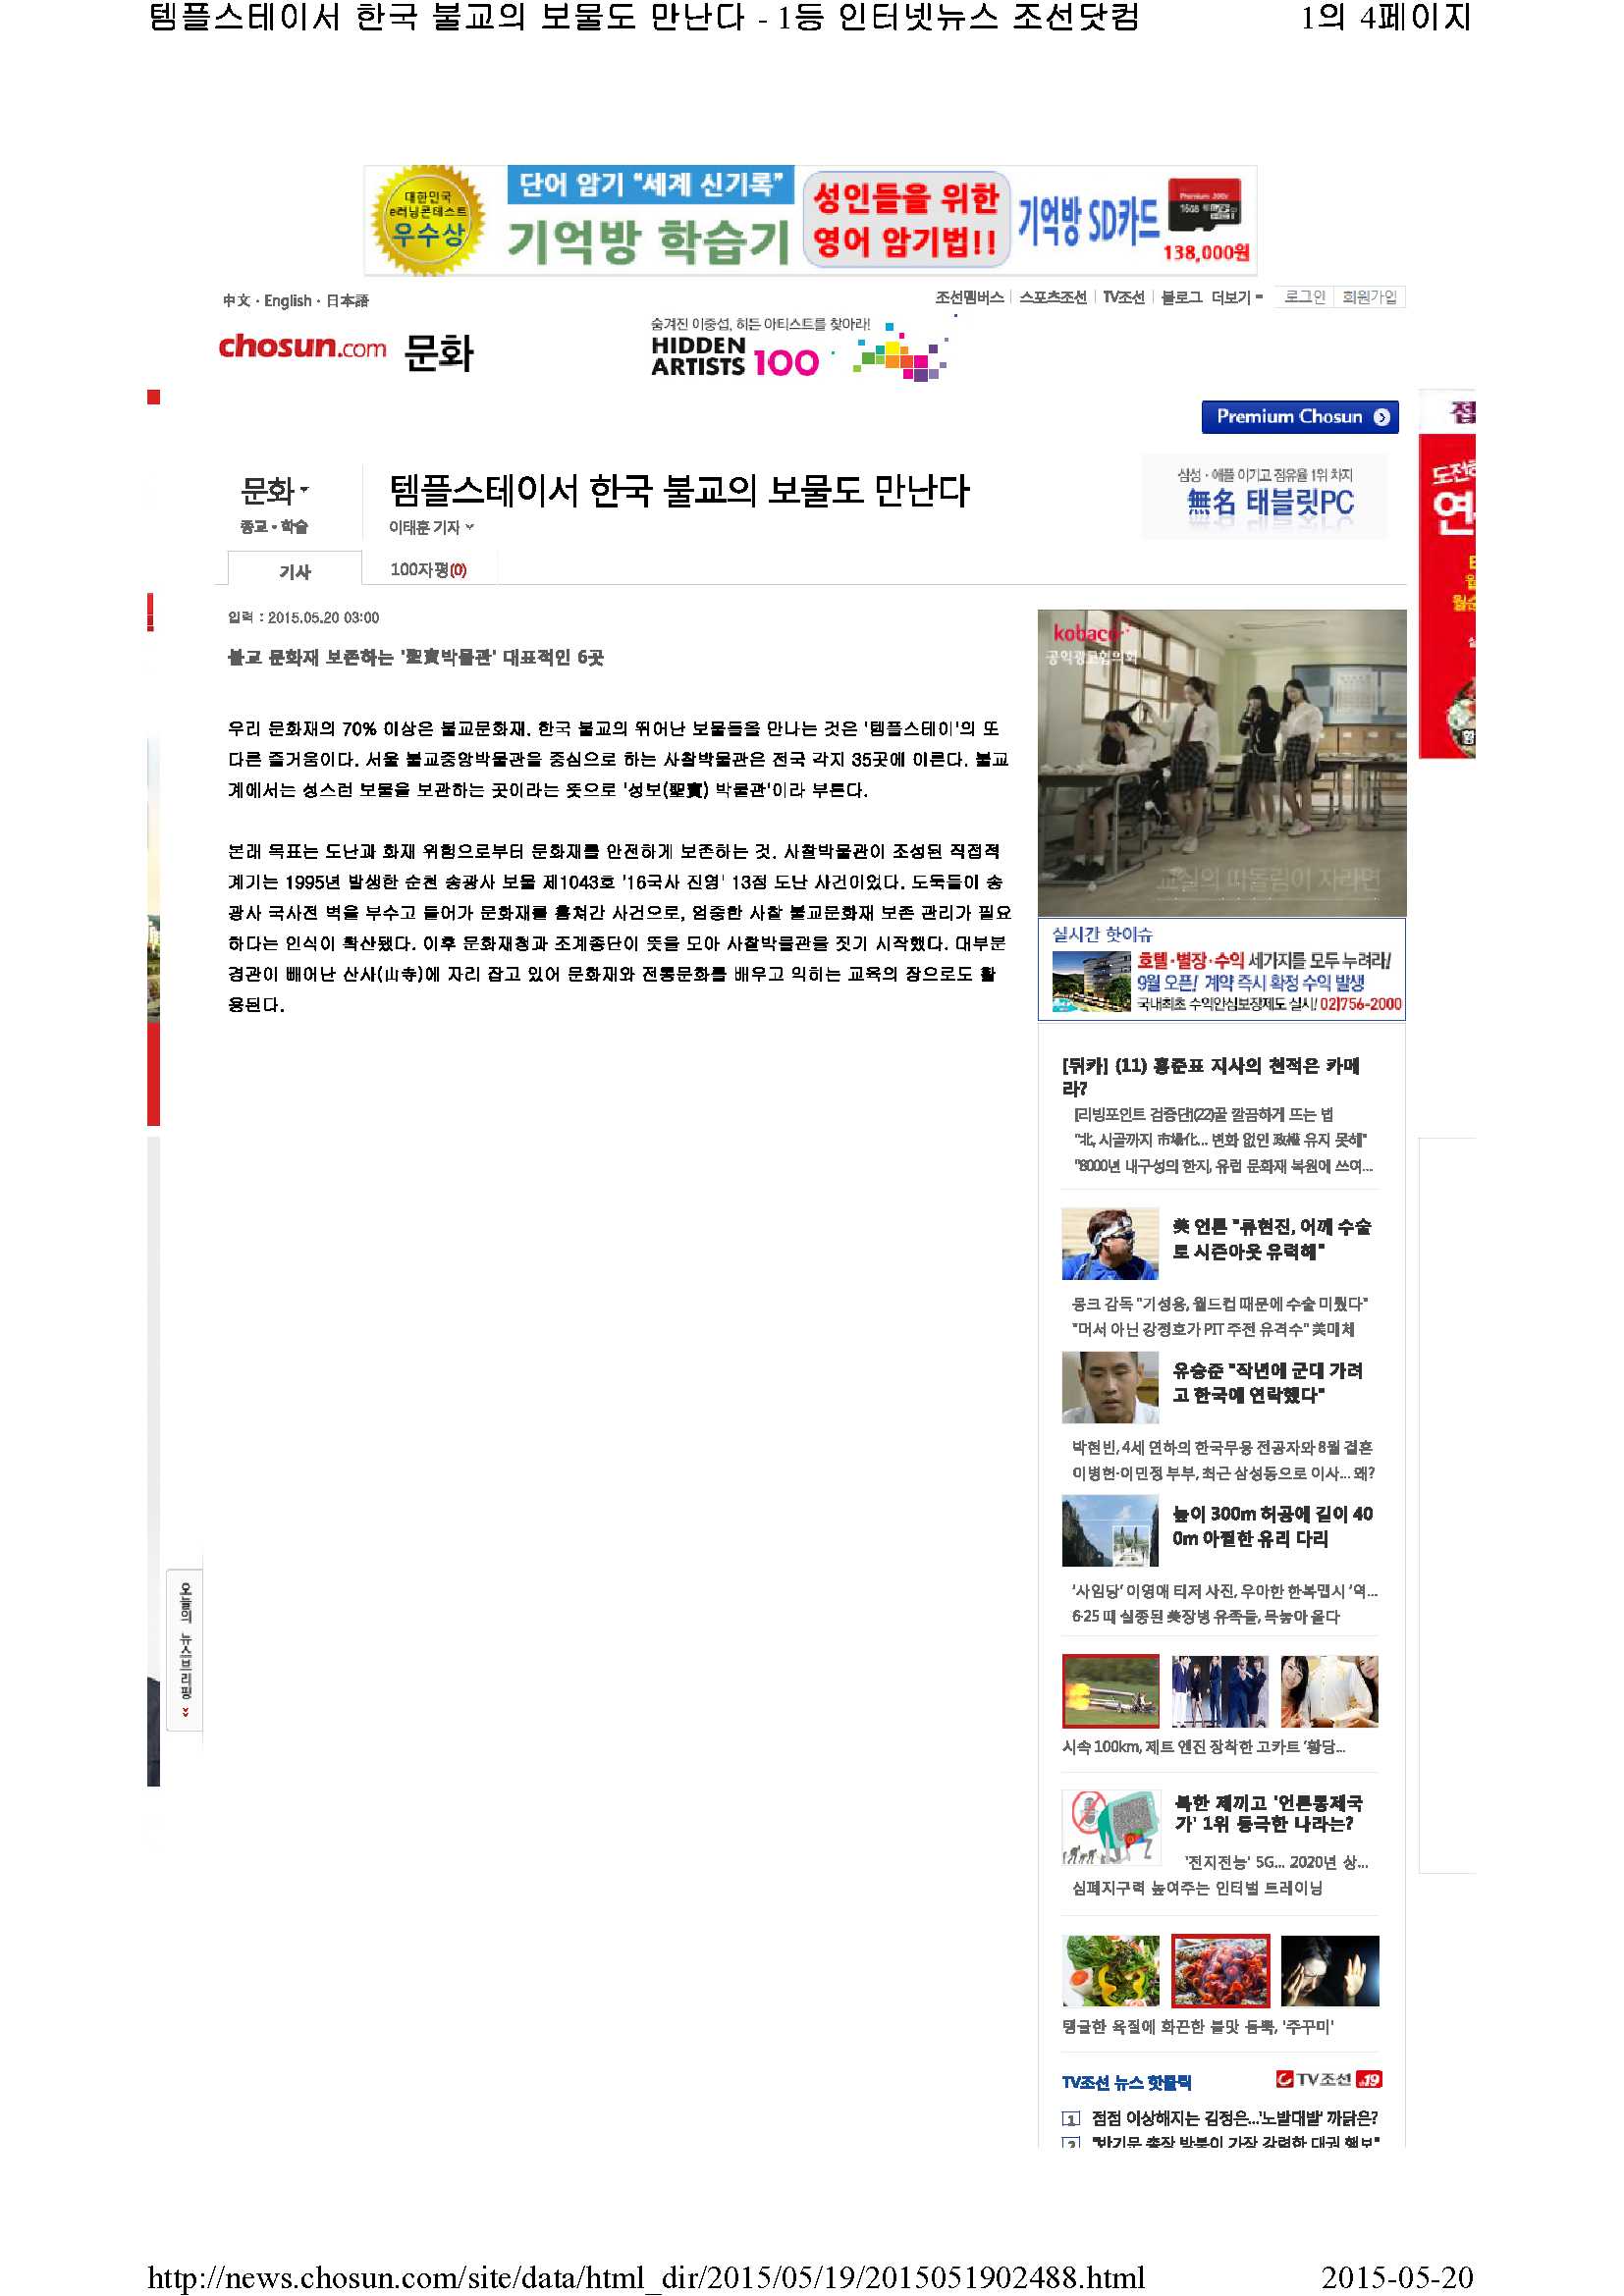 조산일보(문화면2)_1.jpg